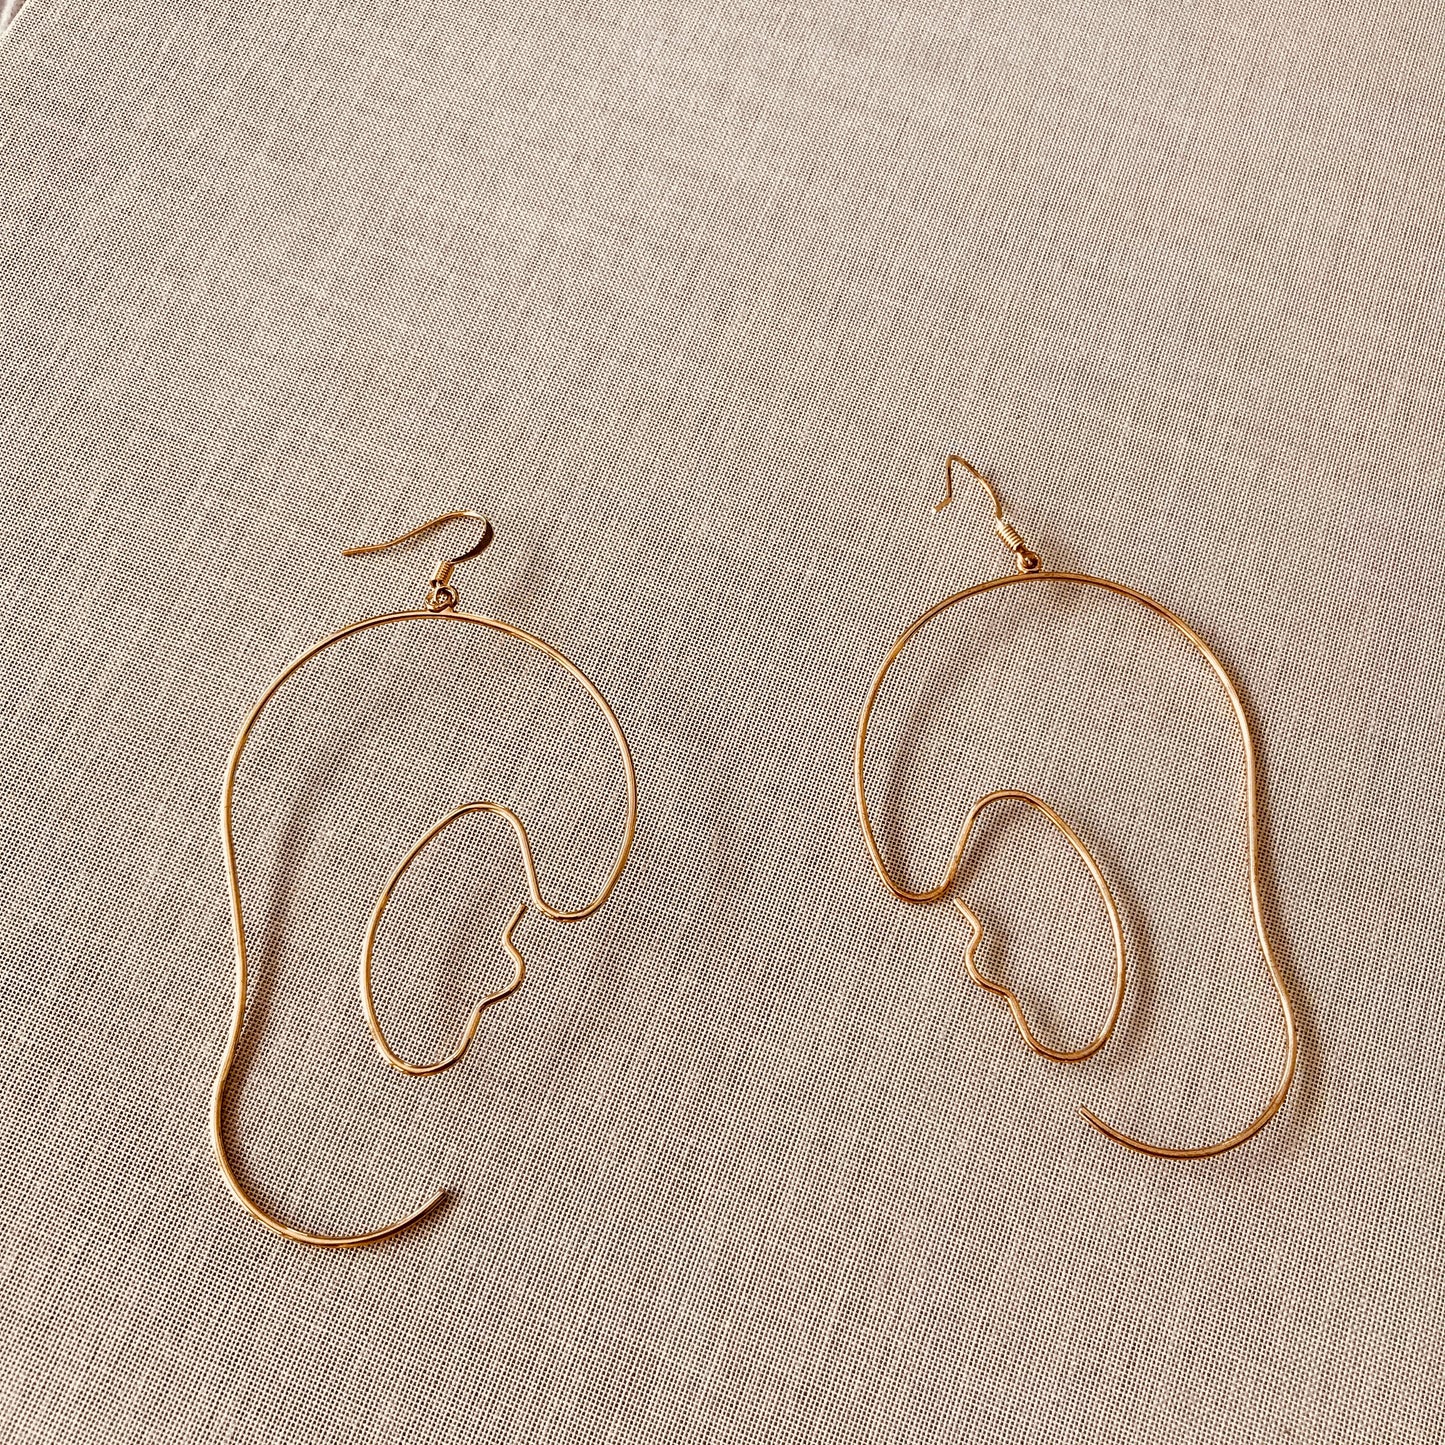 Mathis Fine Line Earrings